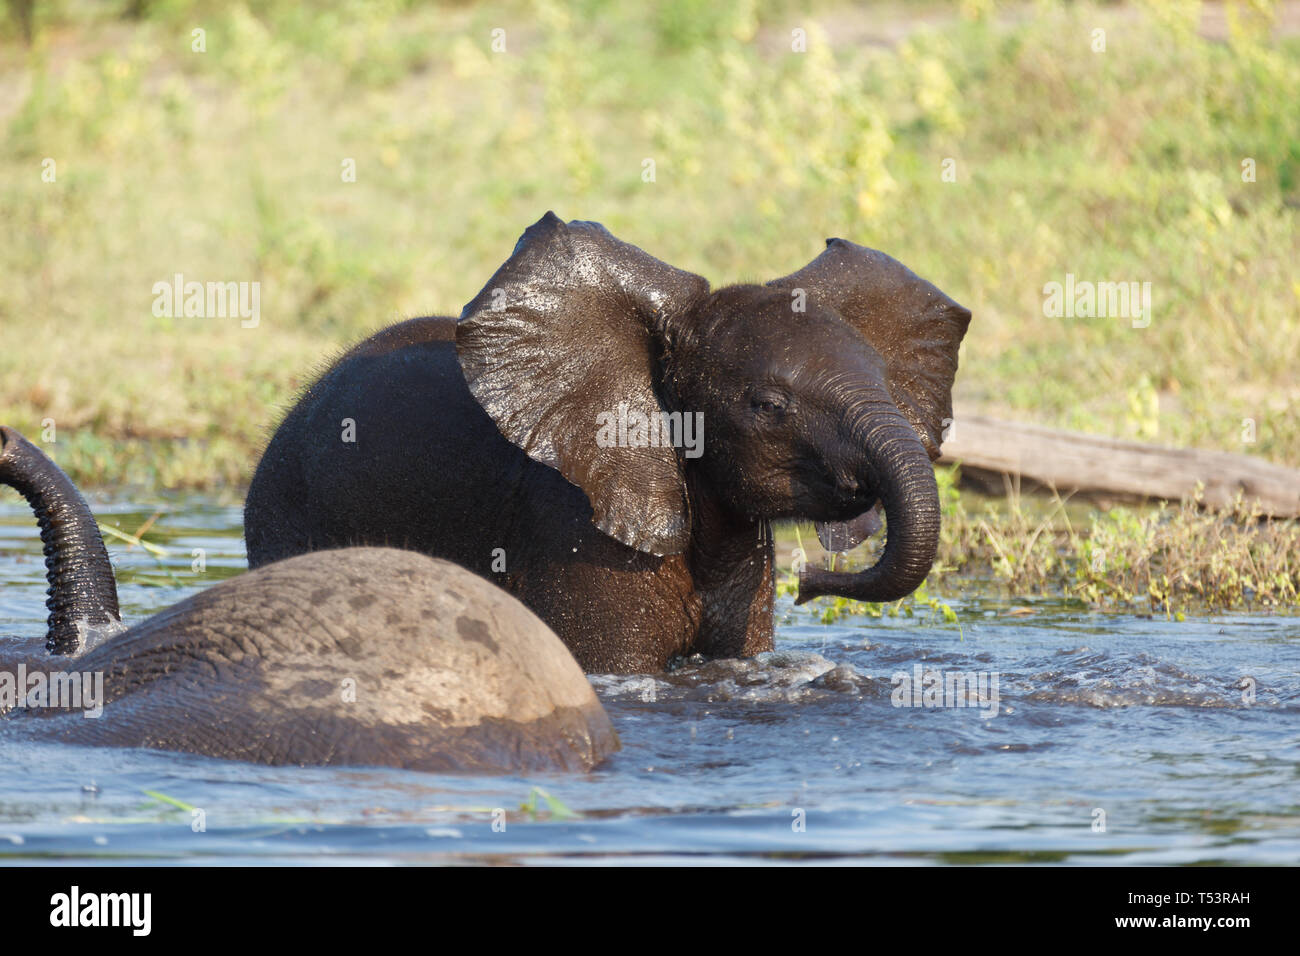 Primo piano di due elefanti,Loxodonta africana, nel fiume di acqua potabile e di balneazione tra cui un bambino Foto Stock